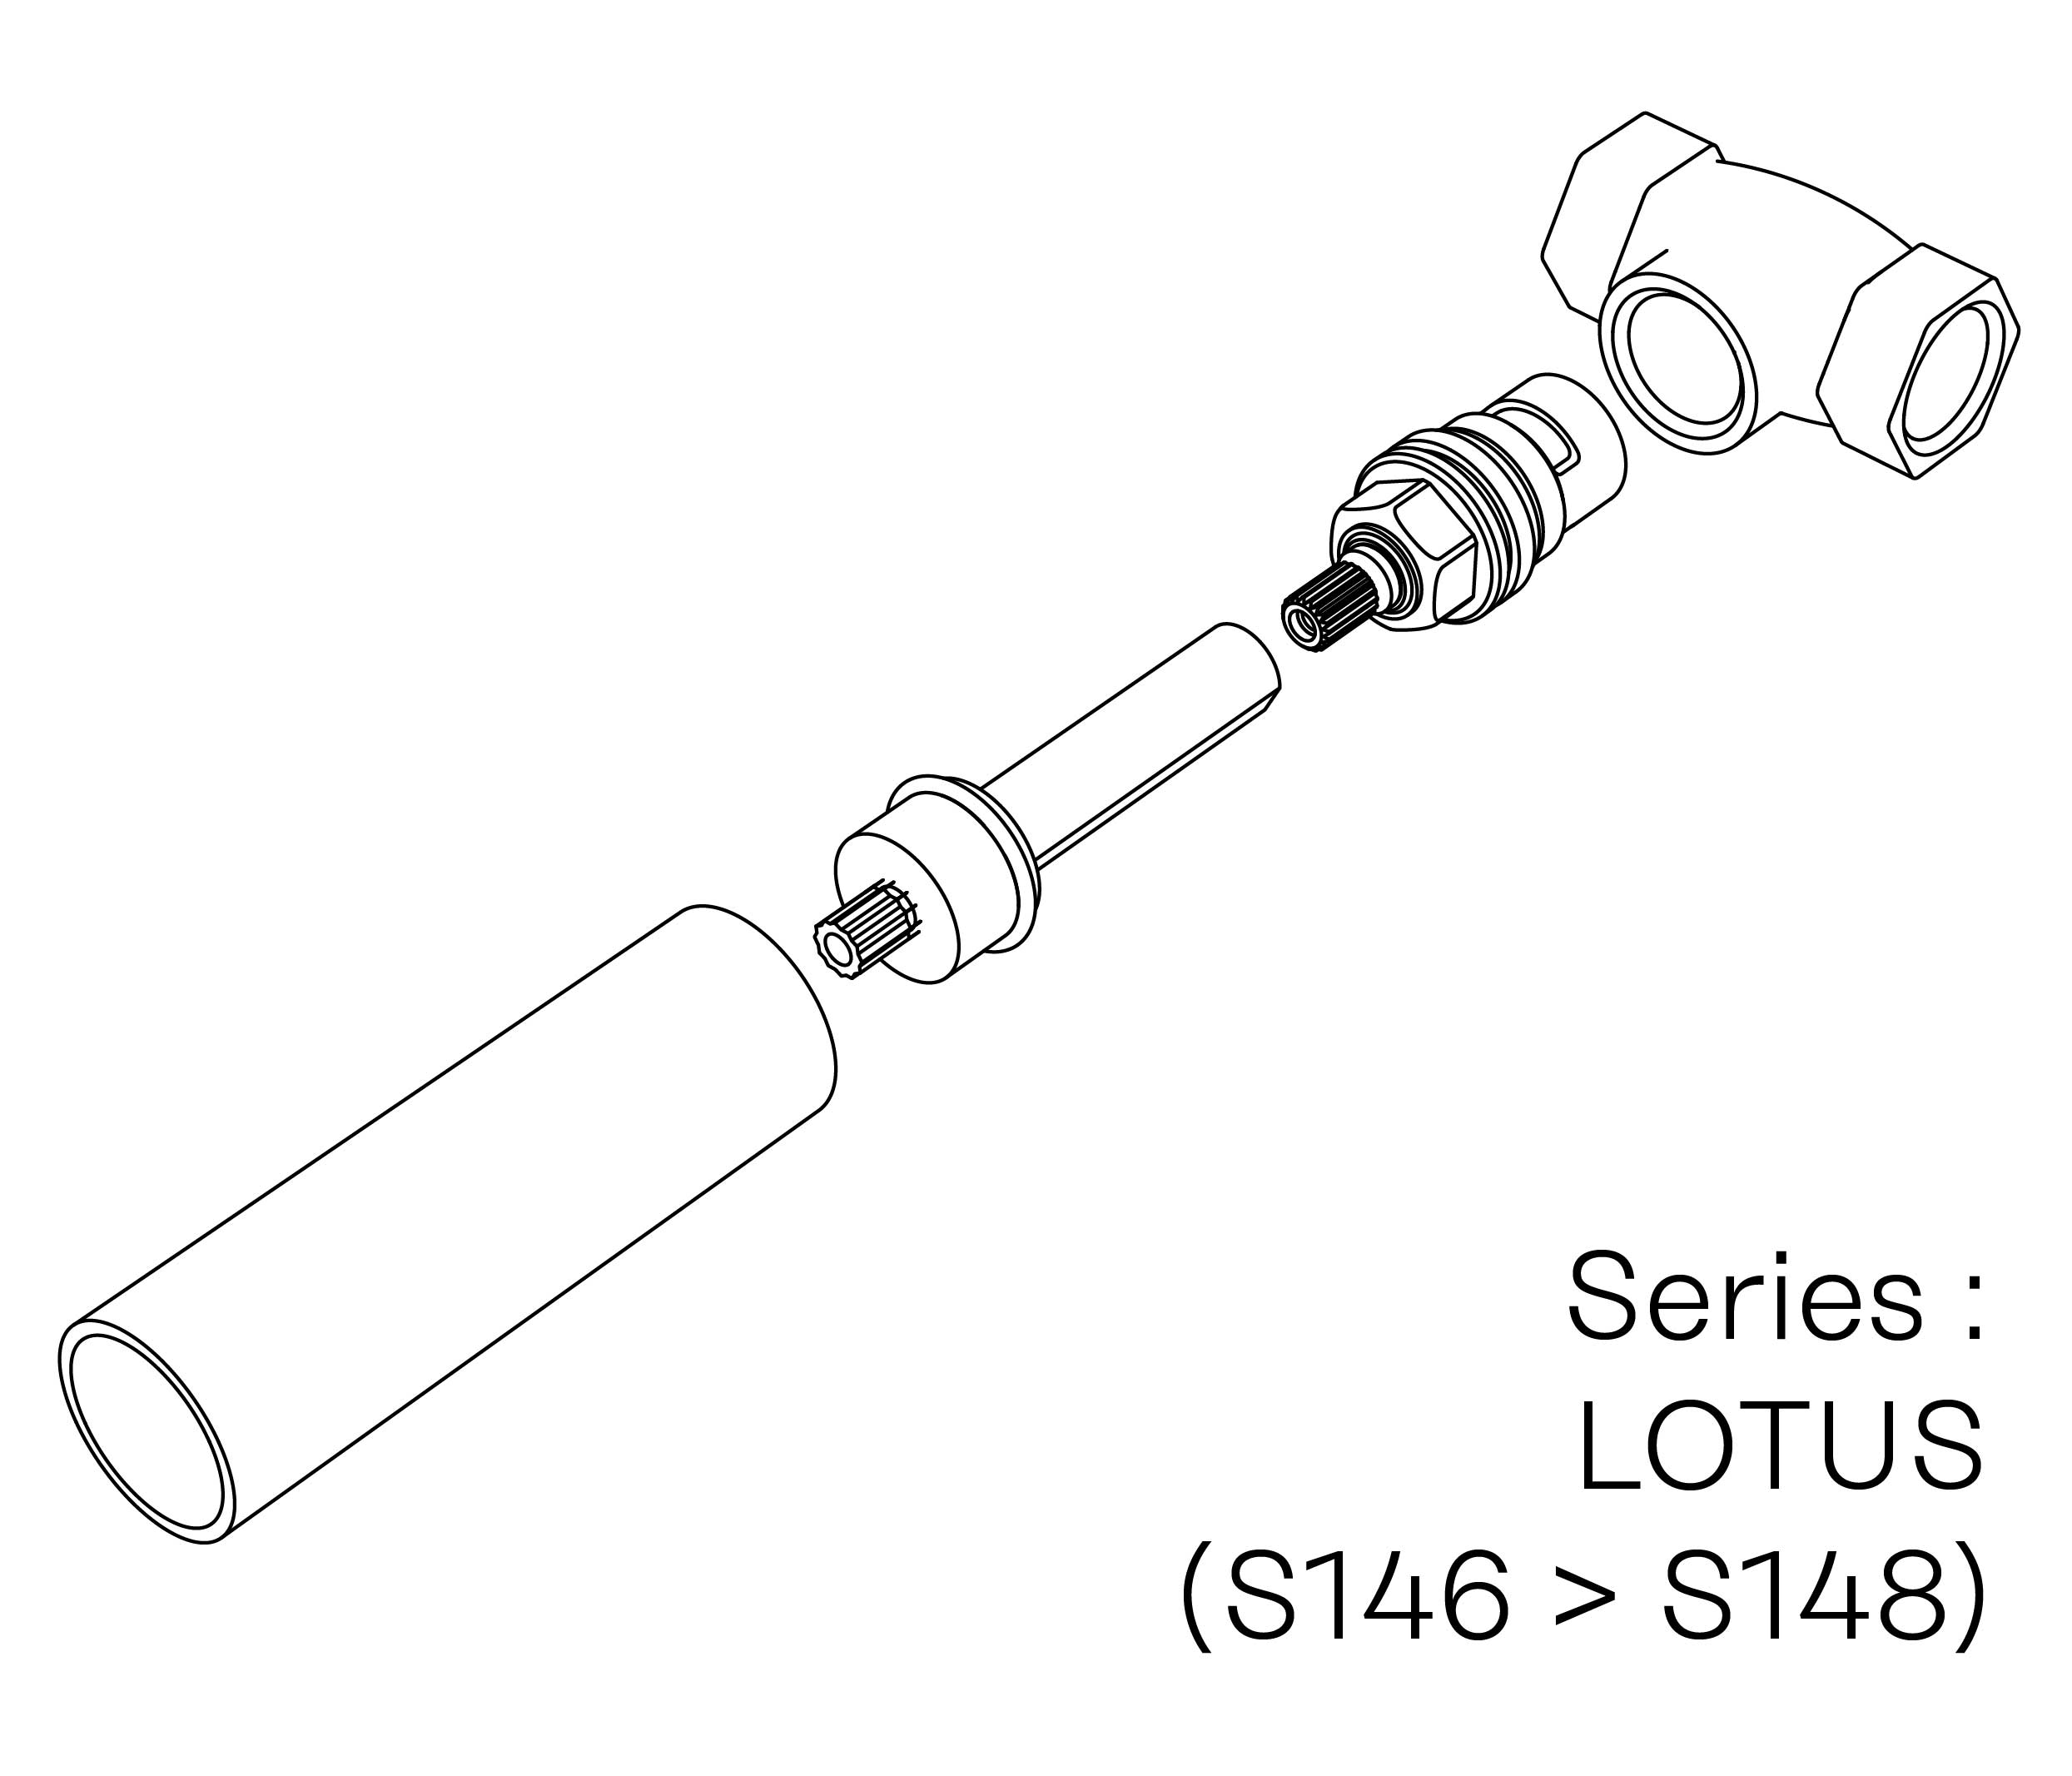 S00-27K29H Kit #7 for W-M valve 3/4″, 1/4 turn, Left